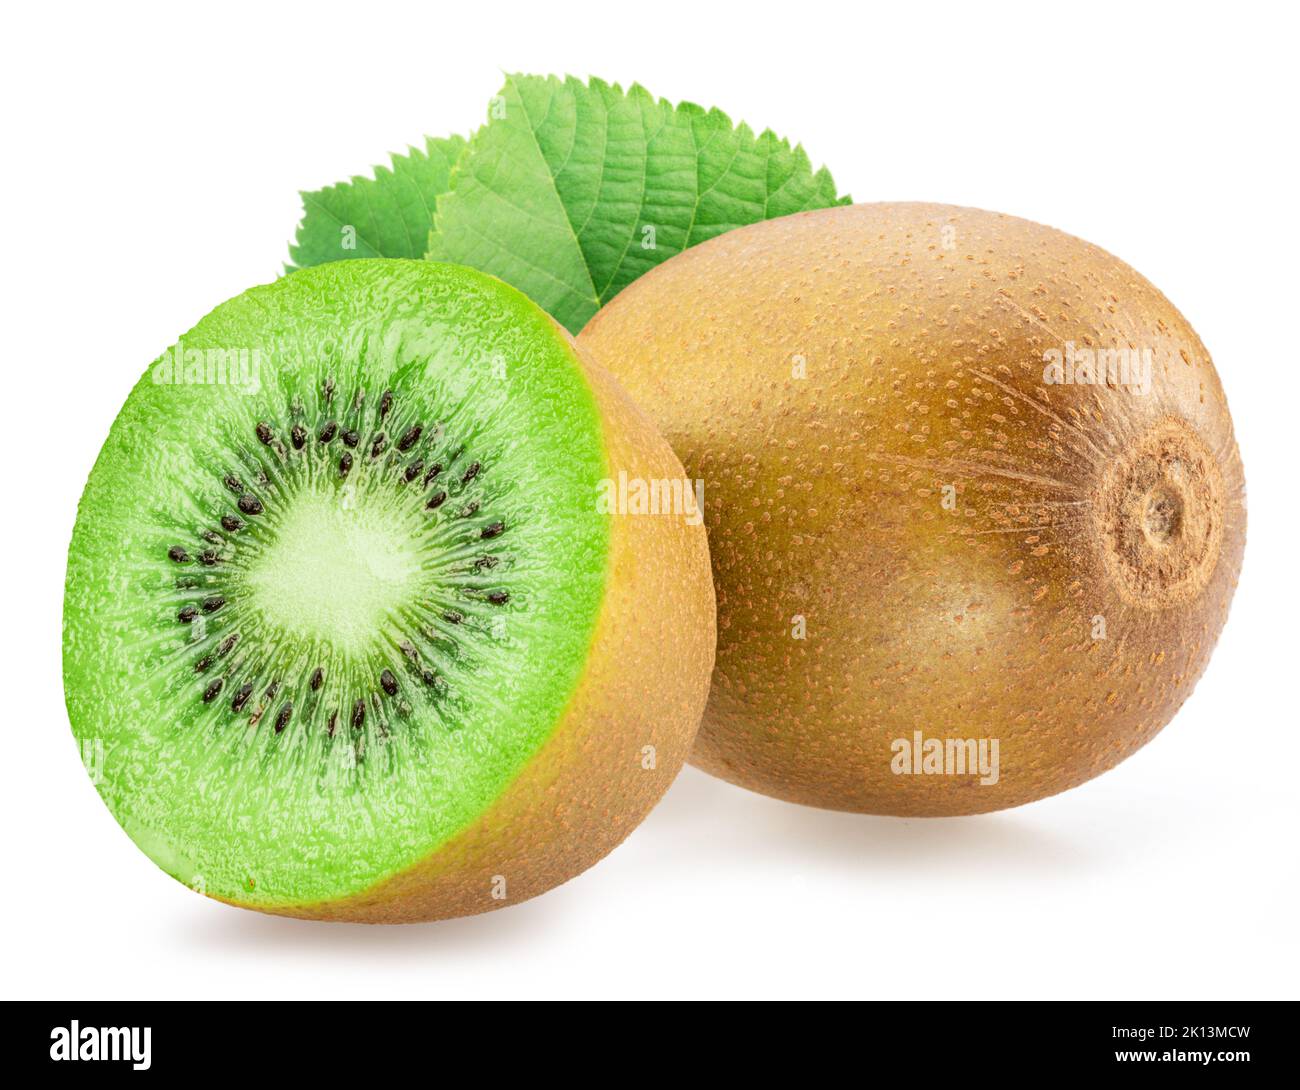 Kiwi fruit, cross cut of kiwi and kiwi leaves isolated on white background. Stock Photo